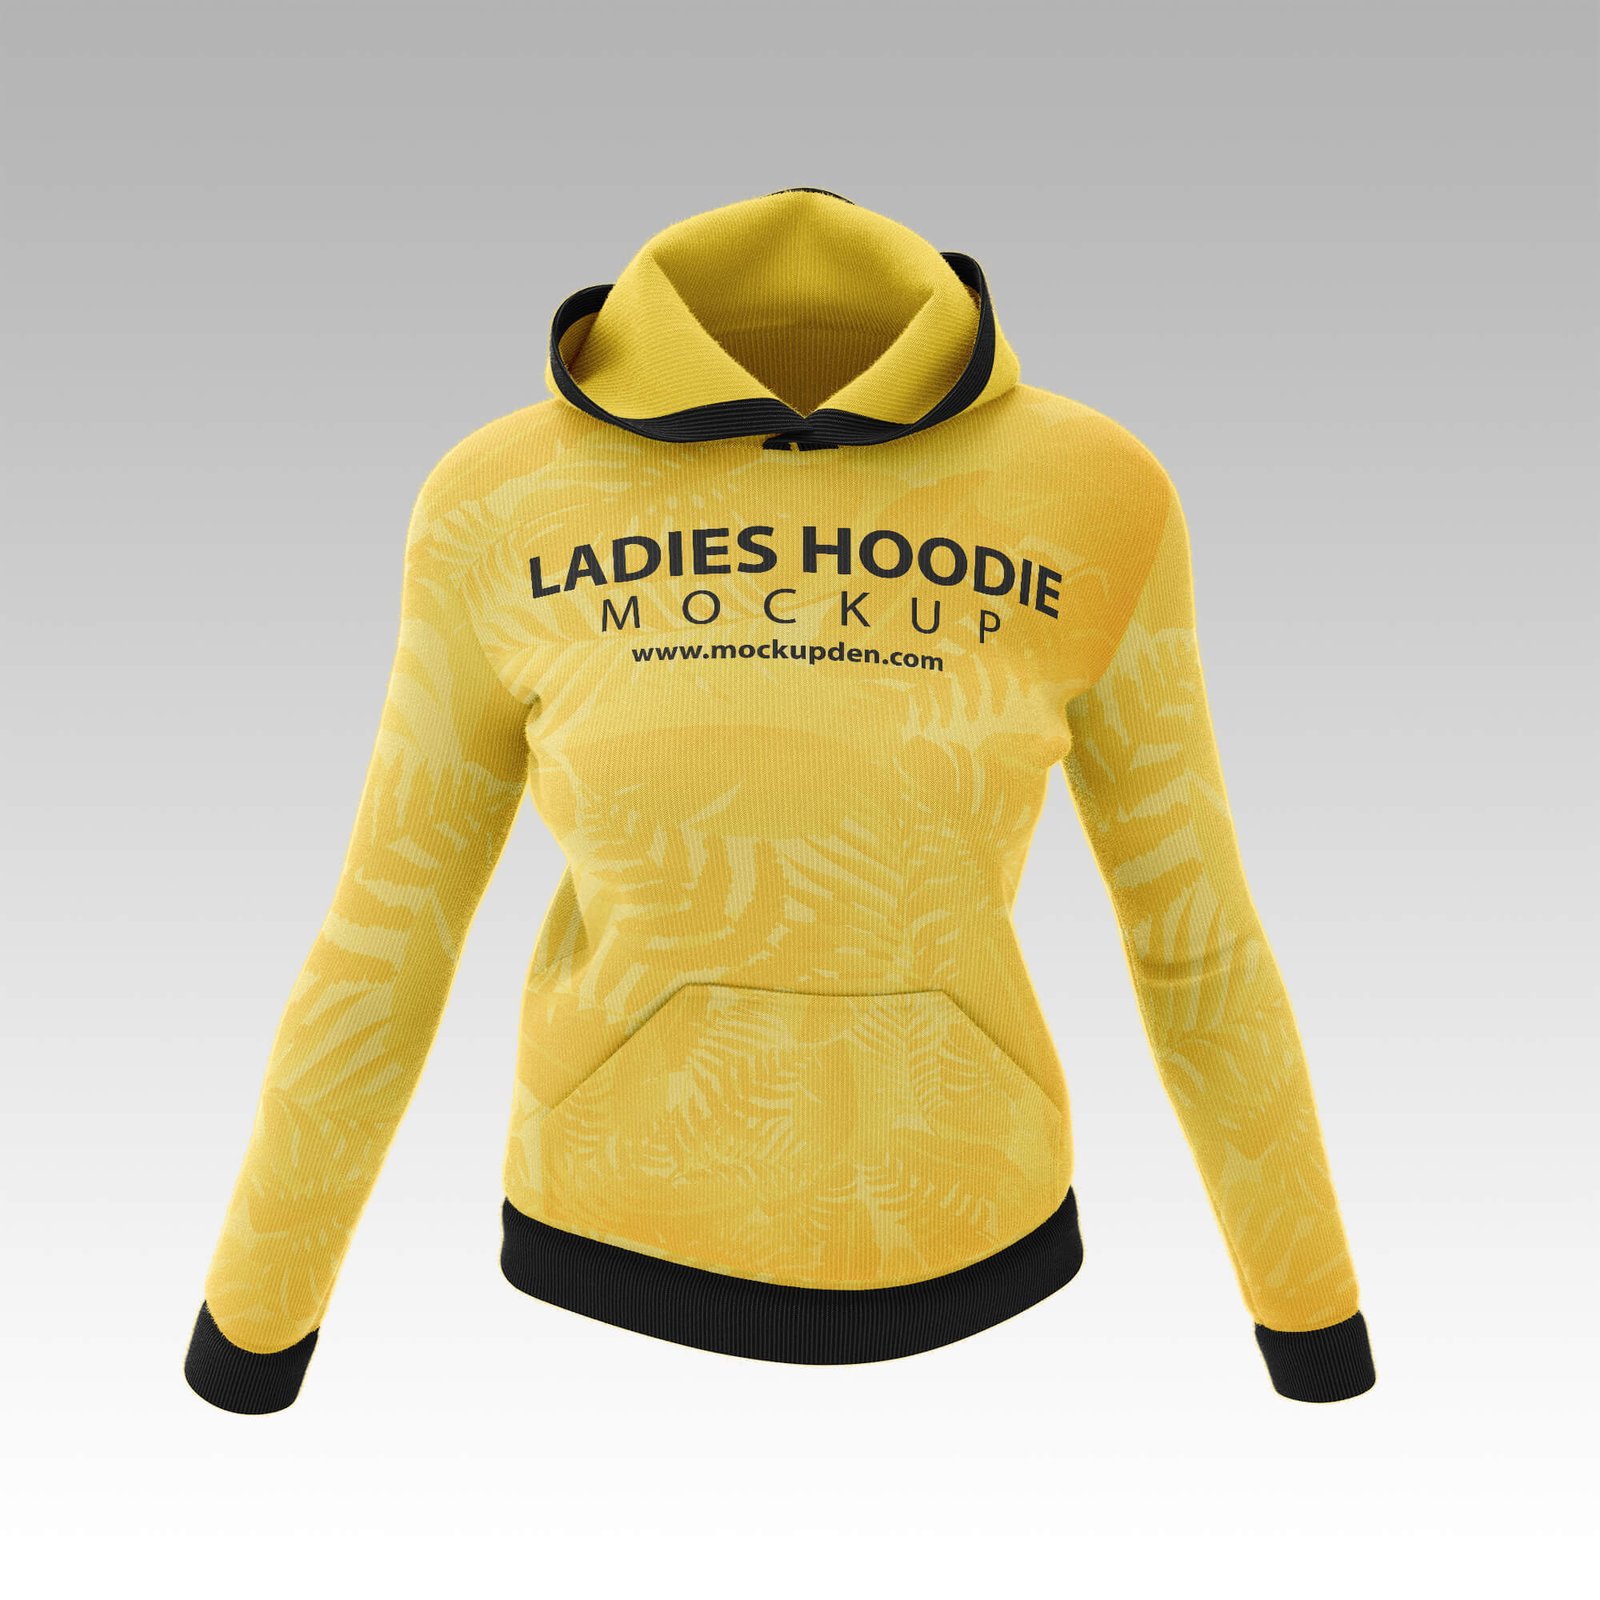 Download Free Ladies Hoodie Mockup PSD Template - Mockup Den